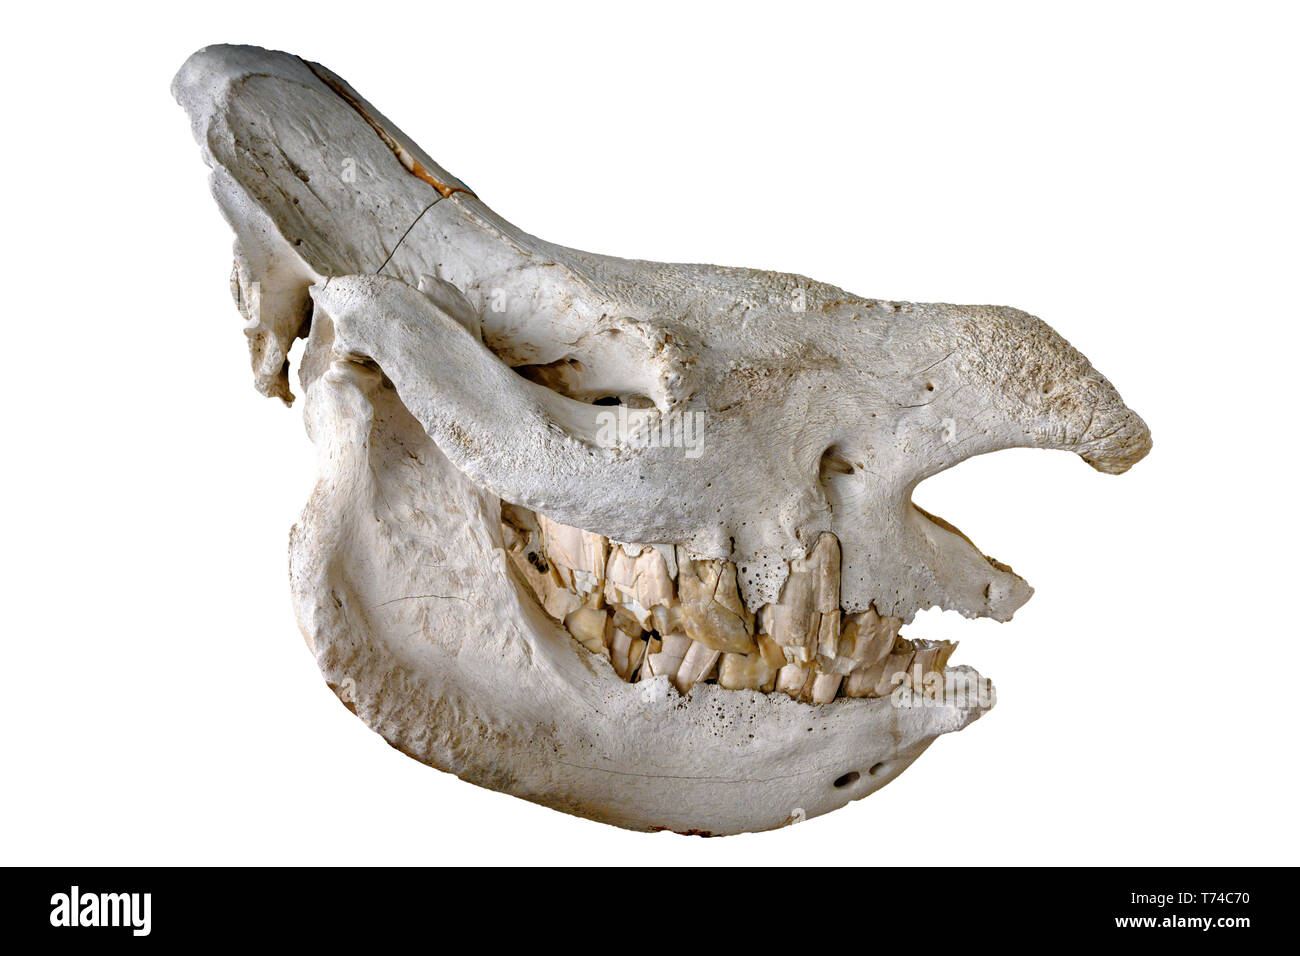 Cranio di rinoceronte bianco del sud o sud square a labbro rinoceronte (Ceratotherium simum simum), isolati su sfondo bianco Foto Stock